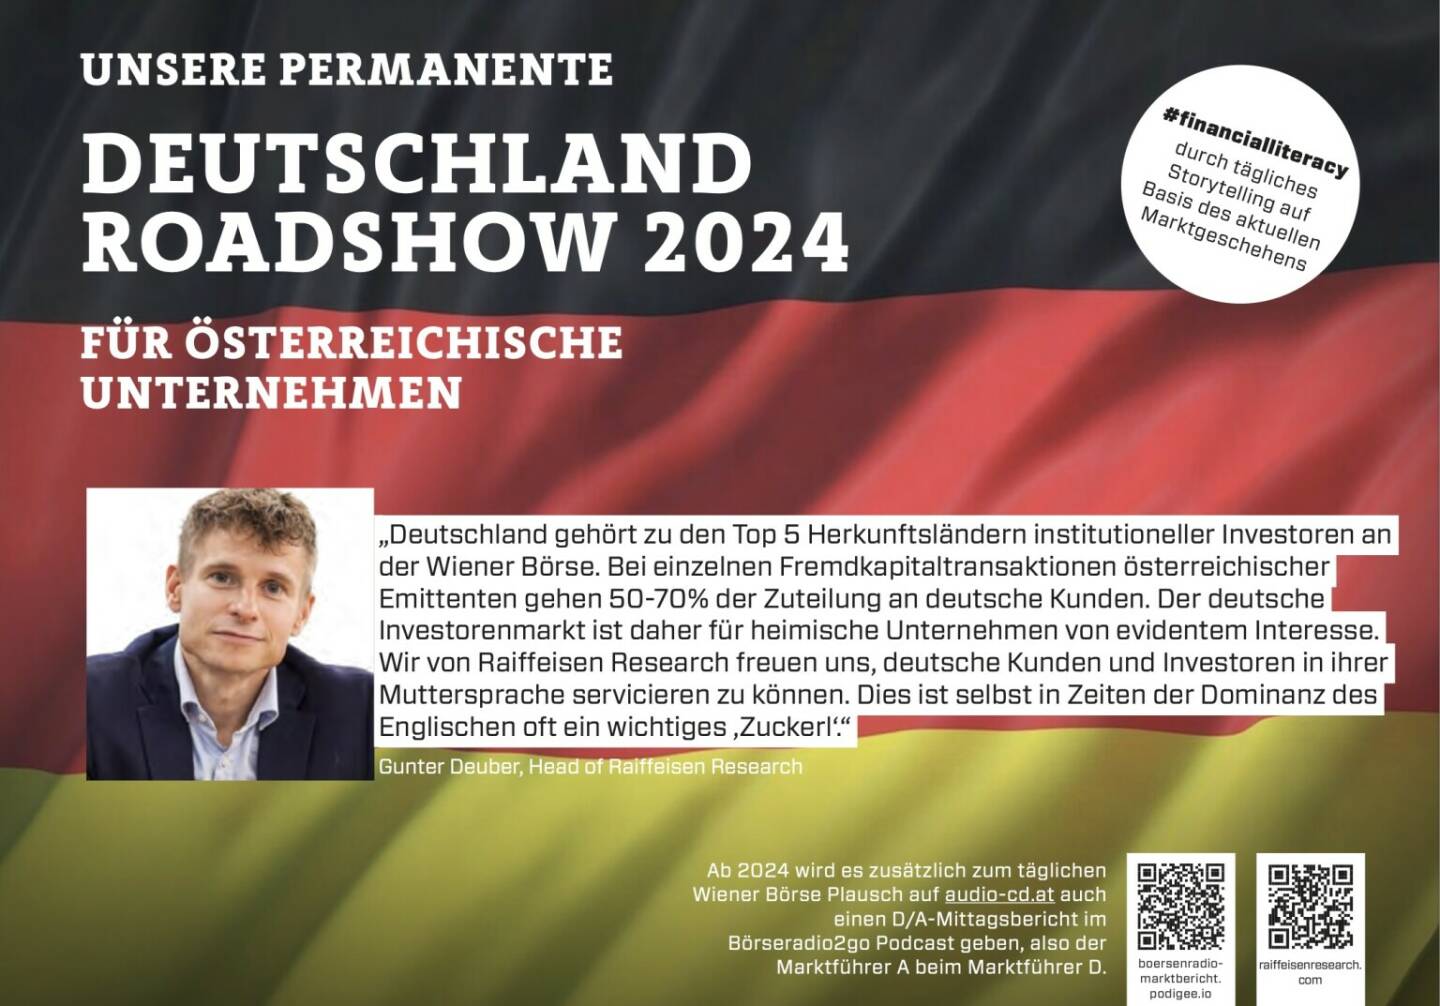 Gunter Deuber mit Raiffeisen Research 2024 mit uns auf Deutschlandroadshow für https://boersenradio-marktbericht.podigee.io